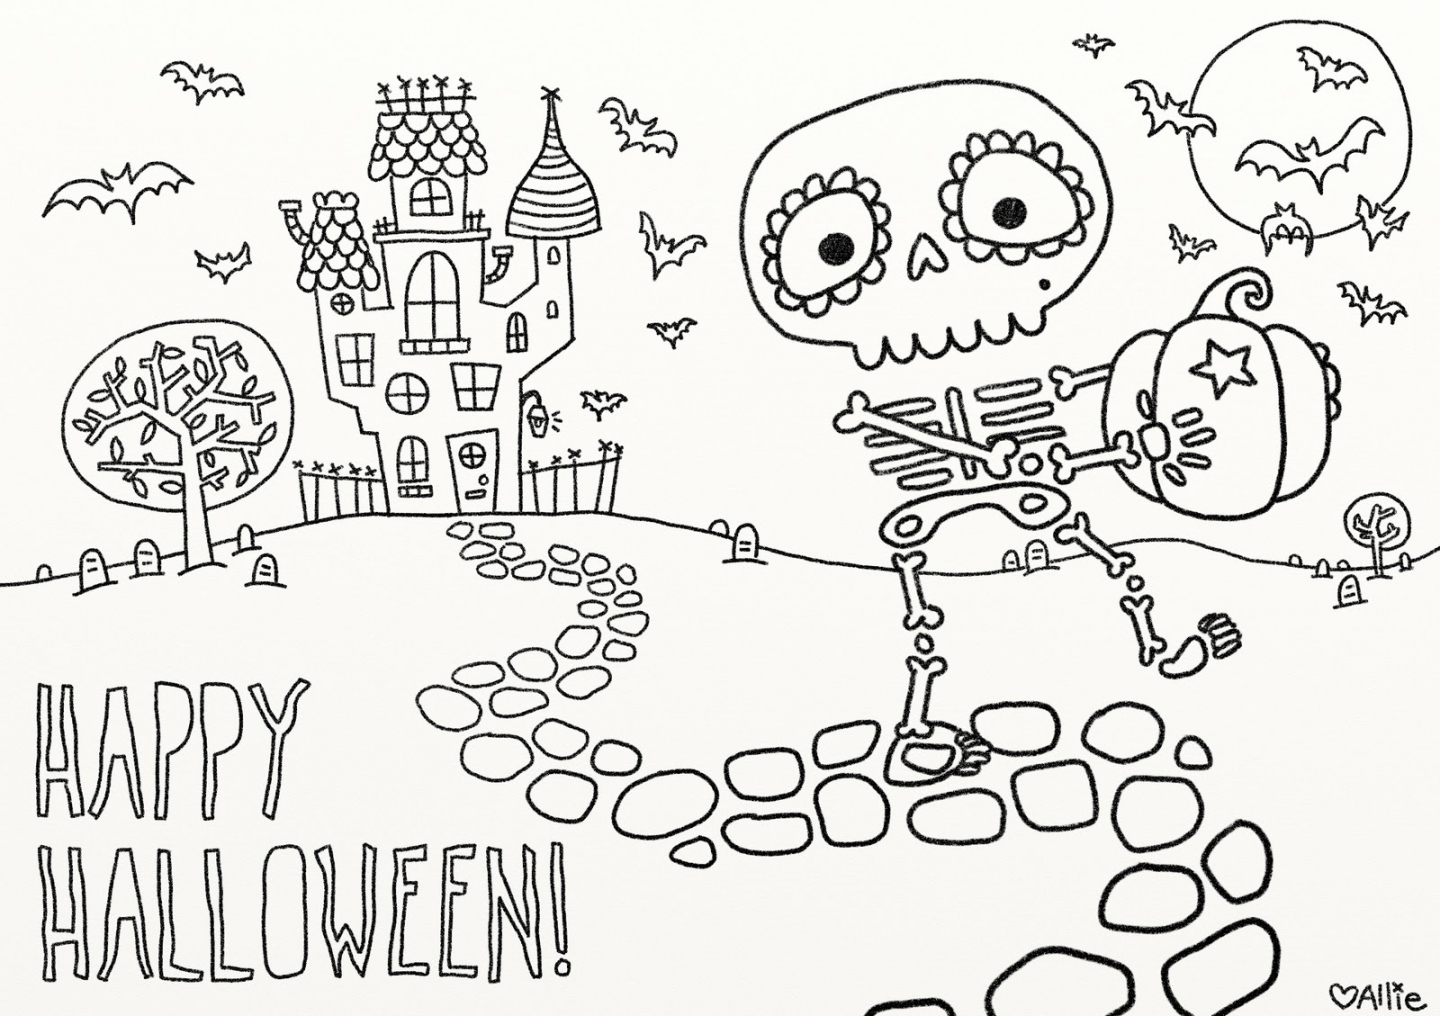 Free Printables For Halloween - Printable -  fun free printable Halloween coloring pages